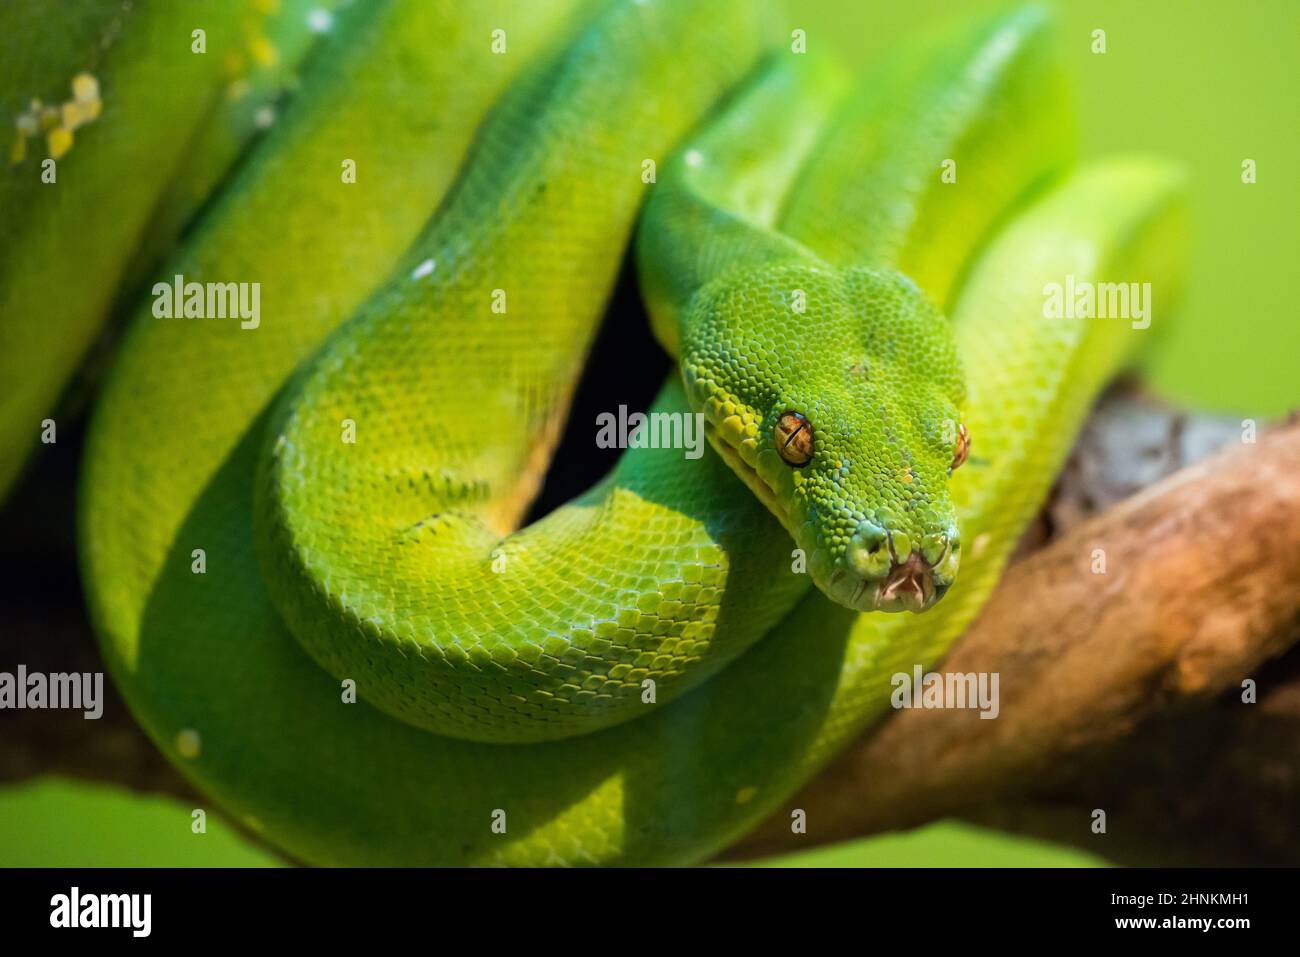 Un serpent vert vif qui peut atteindre 2 mètres de longueur Banque D'Images